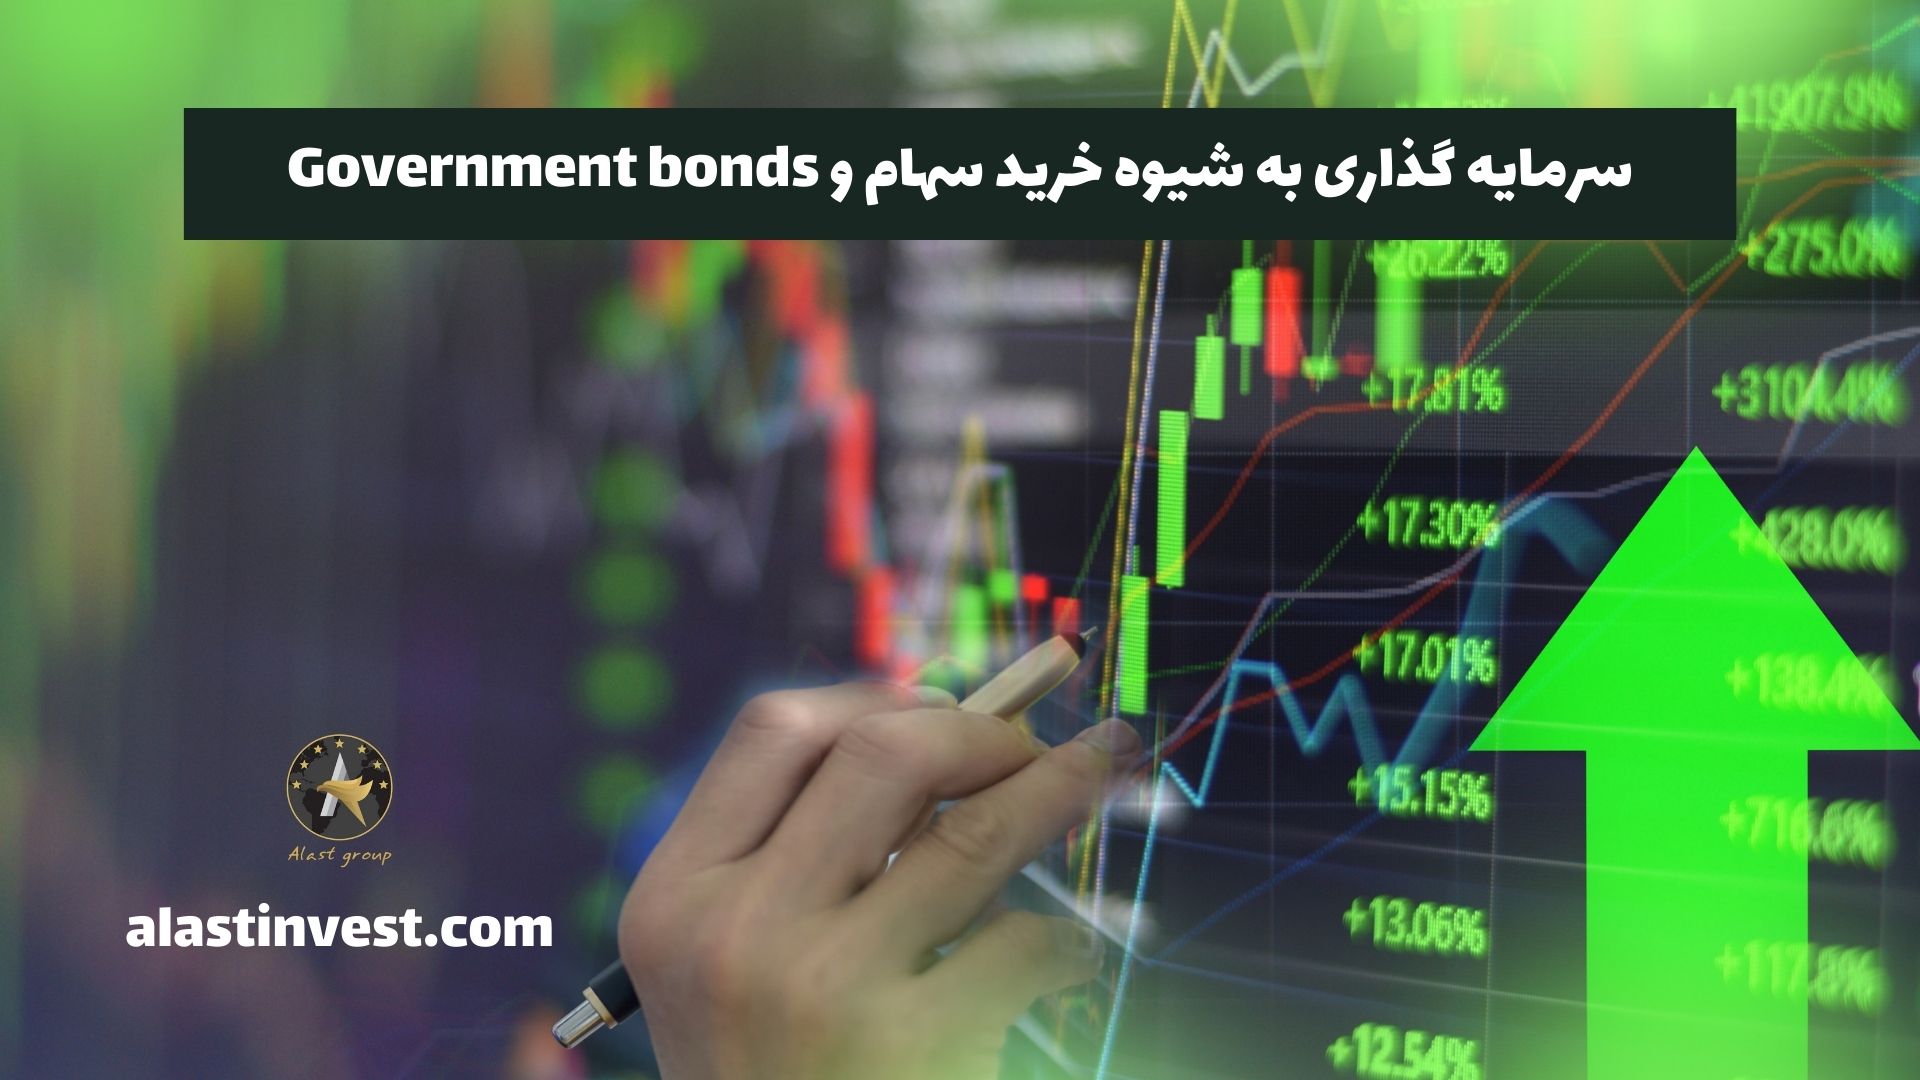 سرمایه گذاری به شیوه خرید سهام و Government bonds